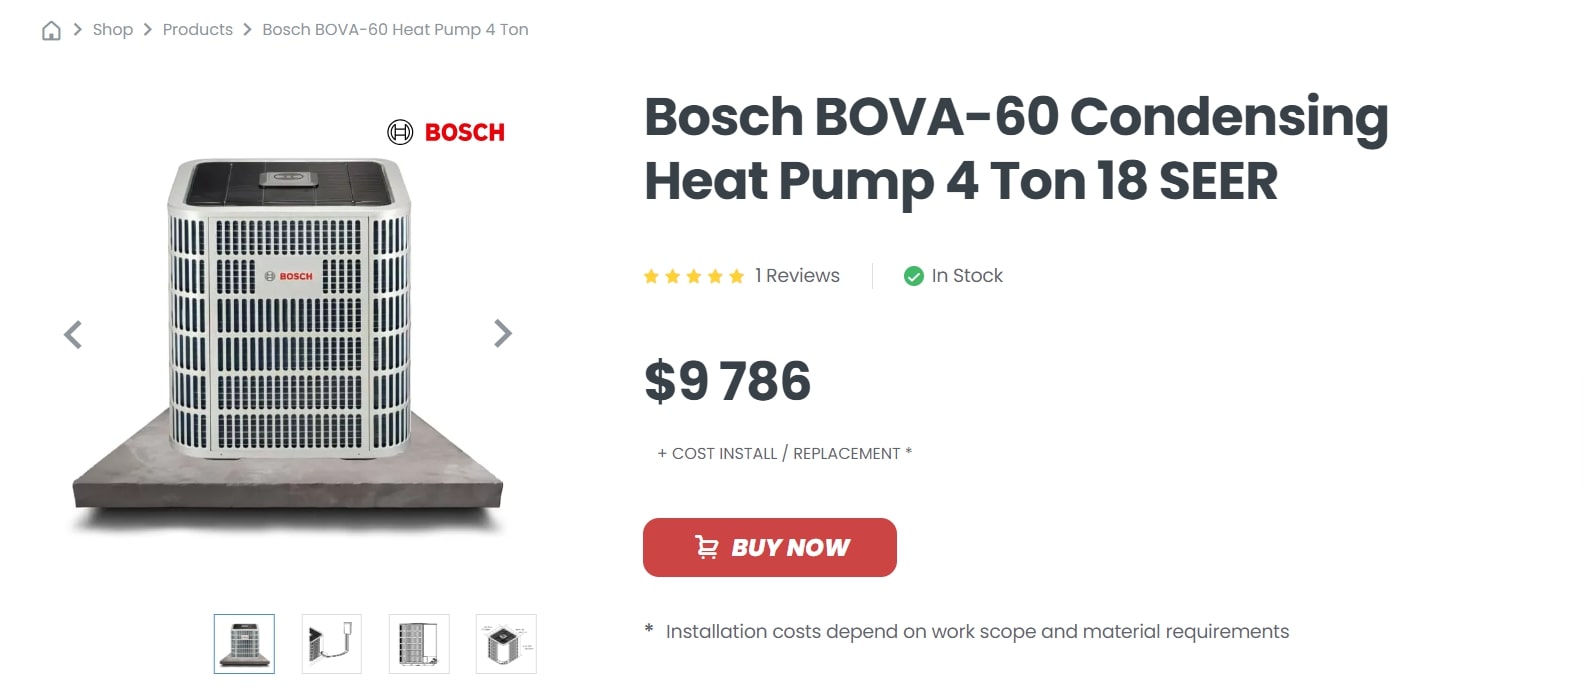 Superior HVAC Service Shop Bosch Dual Fuel System Heat Pump 36K BTU, Furnace 60K BTU